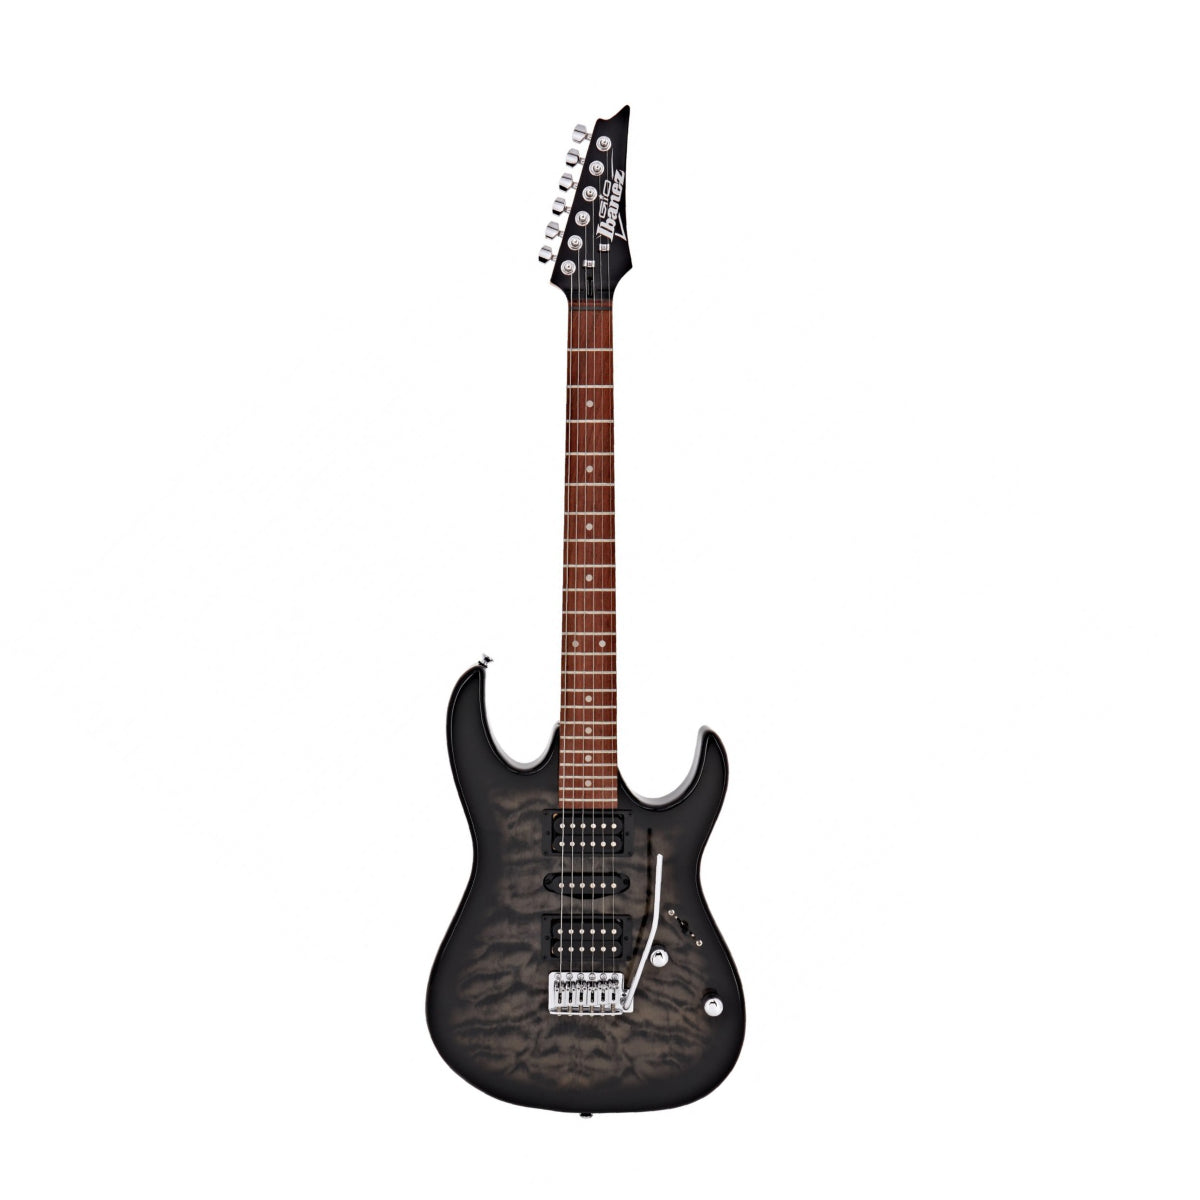 Đàn Guitar Điện Ibanez GIO GRX70QA, Transparent Black Burst